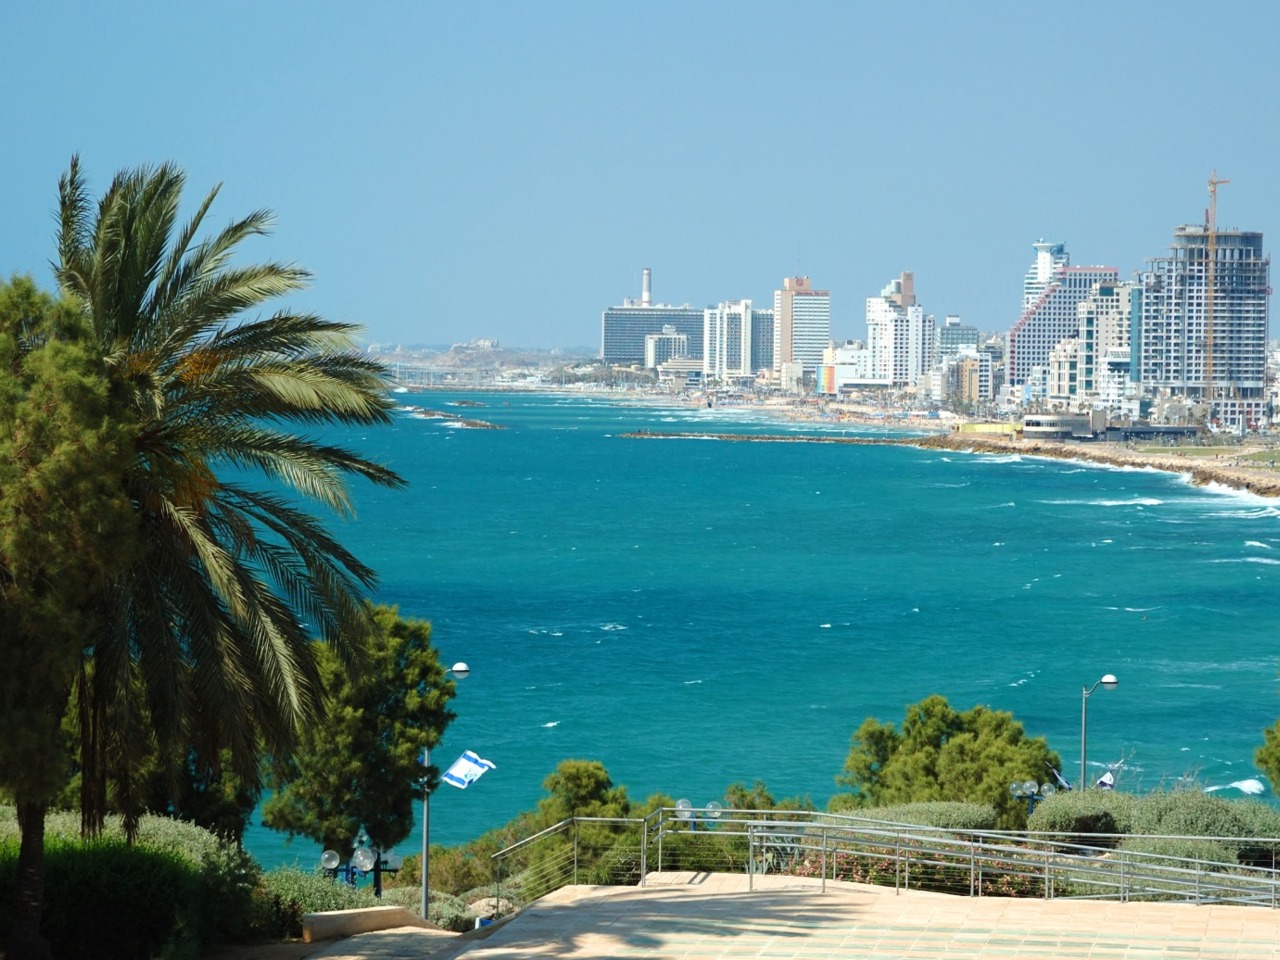 Солнечный маршрут по гостеприимному Тель-Авиву | Цена 800€, отзывы, описание экскурсии